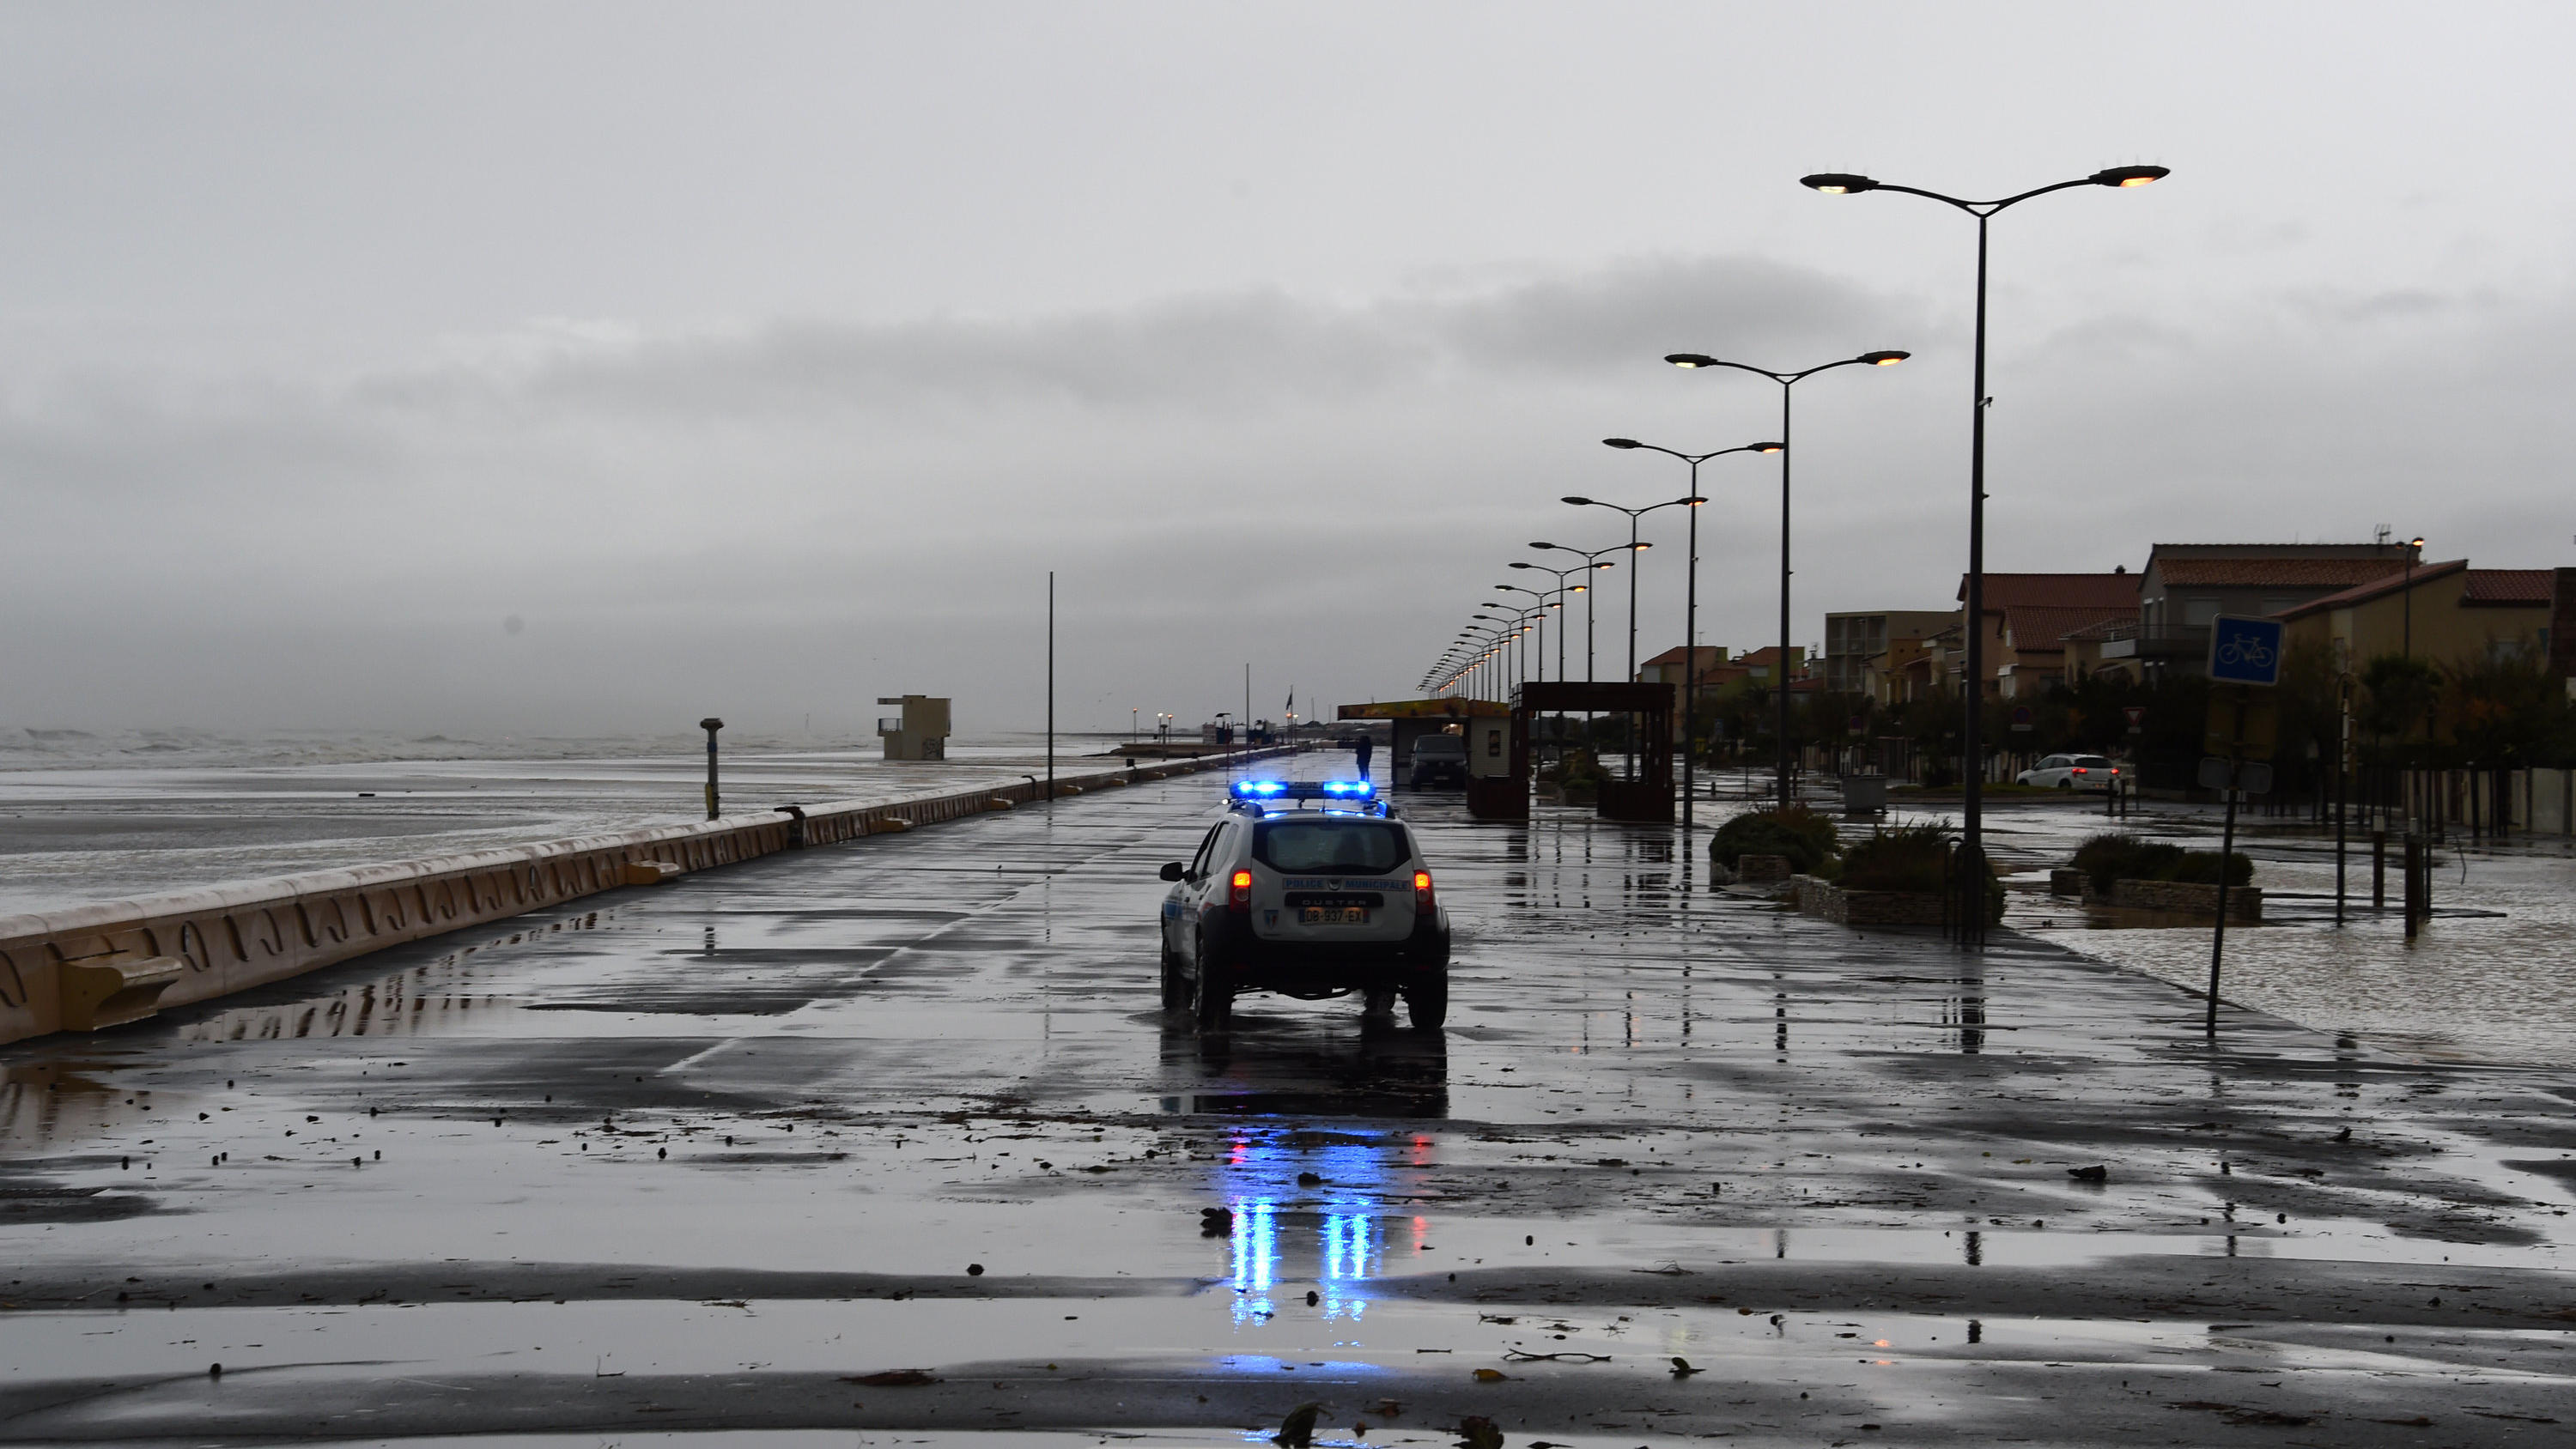 23.10.2019, Frankreich, Narbonne: Ein Polizeifahrzeug fährt nach den nächtlichen Stürmen vom 23. Oktober 2019 entlang der Strandpromenade von Narbonne in Südfrankreich. Die Departements Bouches-du-Rhone, Var und Vaucluse wurden nach nächtlichen Übers